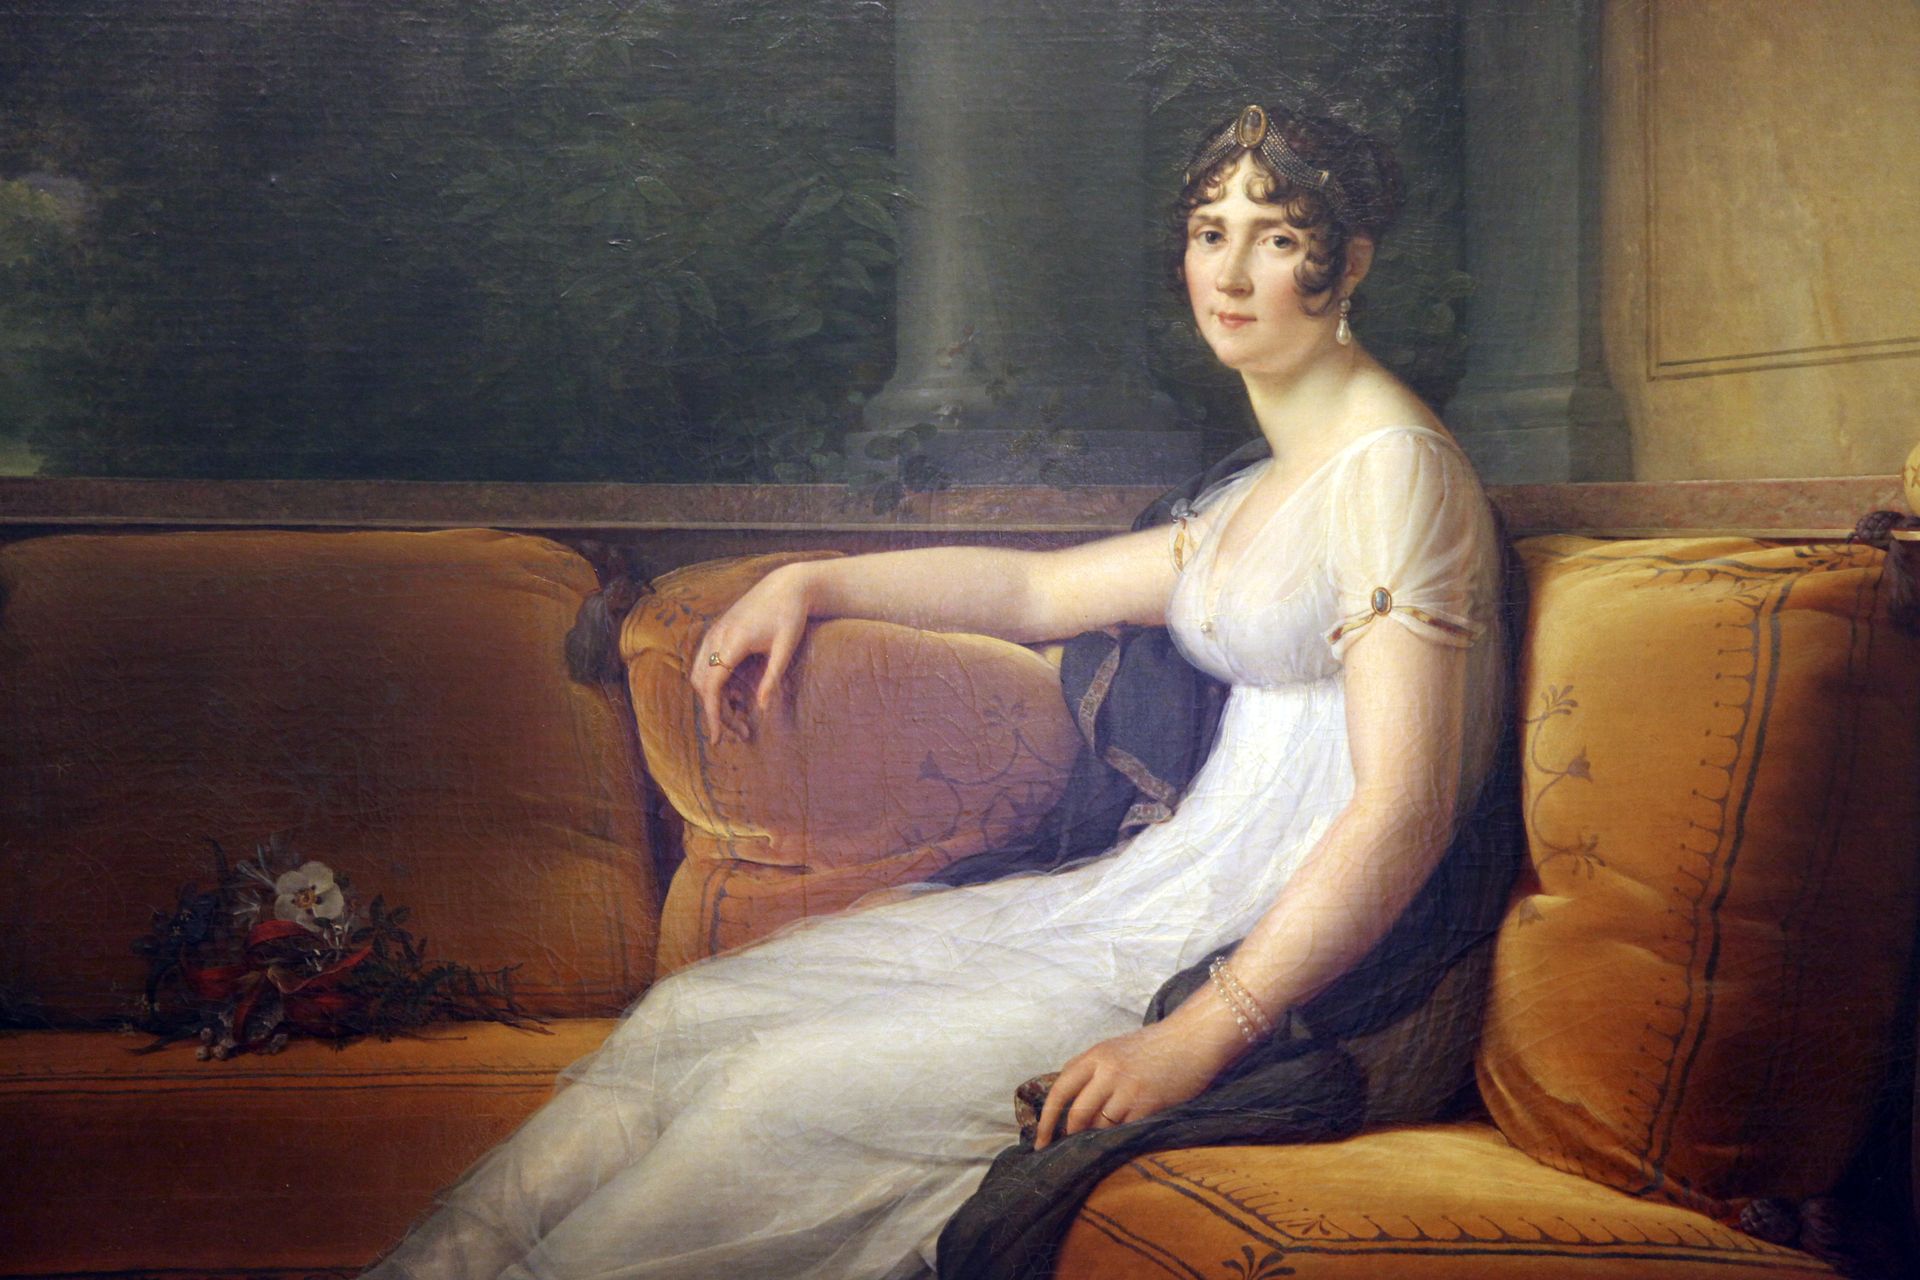 <p>"Napoleon", il film biografico di Ridley Scott sul famoso imperatore francese, è uscito nei cinema il 22 novembre. È un'occasione per vedere sullo schermo la storica figura di Joséphine de Beauharnais, la prima moglie di Napoleone.</p>